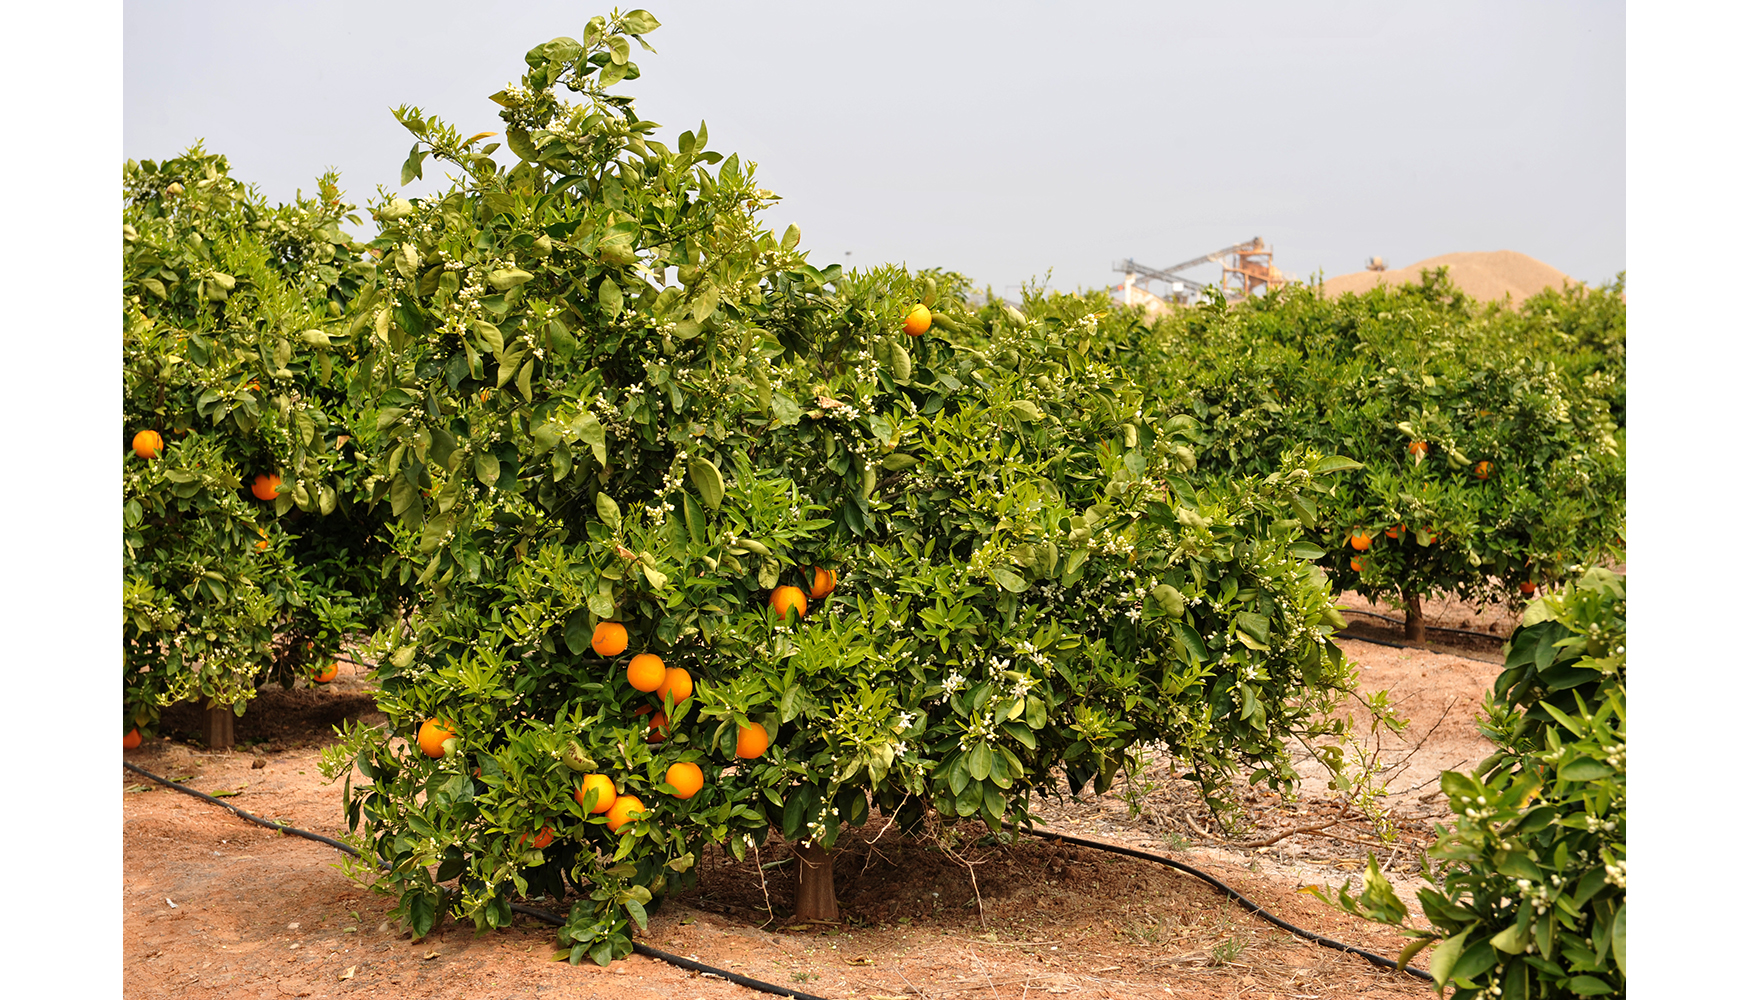 Los terrenos rehabilitados se transforman en terrenos frtiles adecuados para el cultivo de naranjas